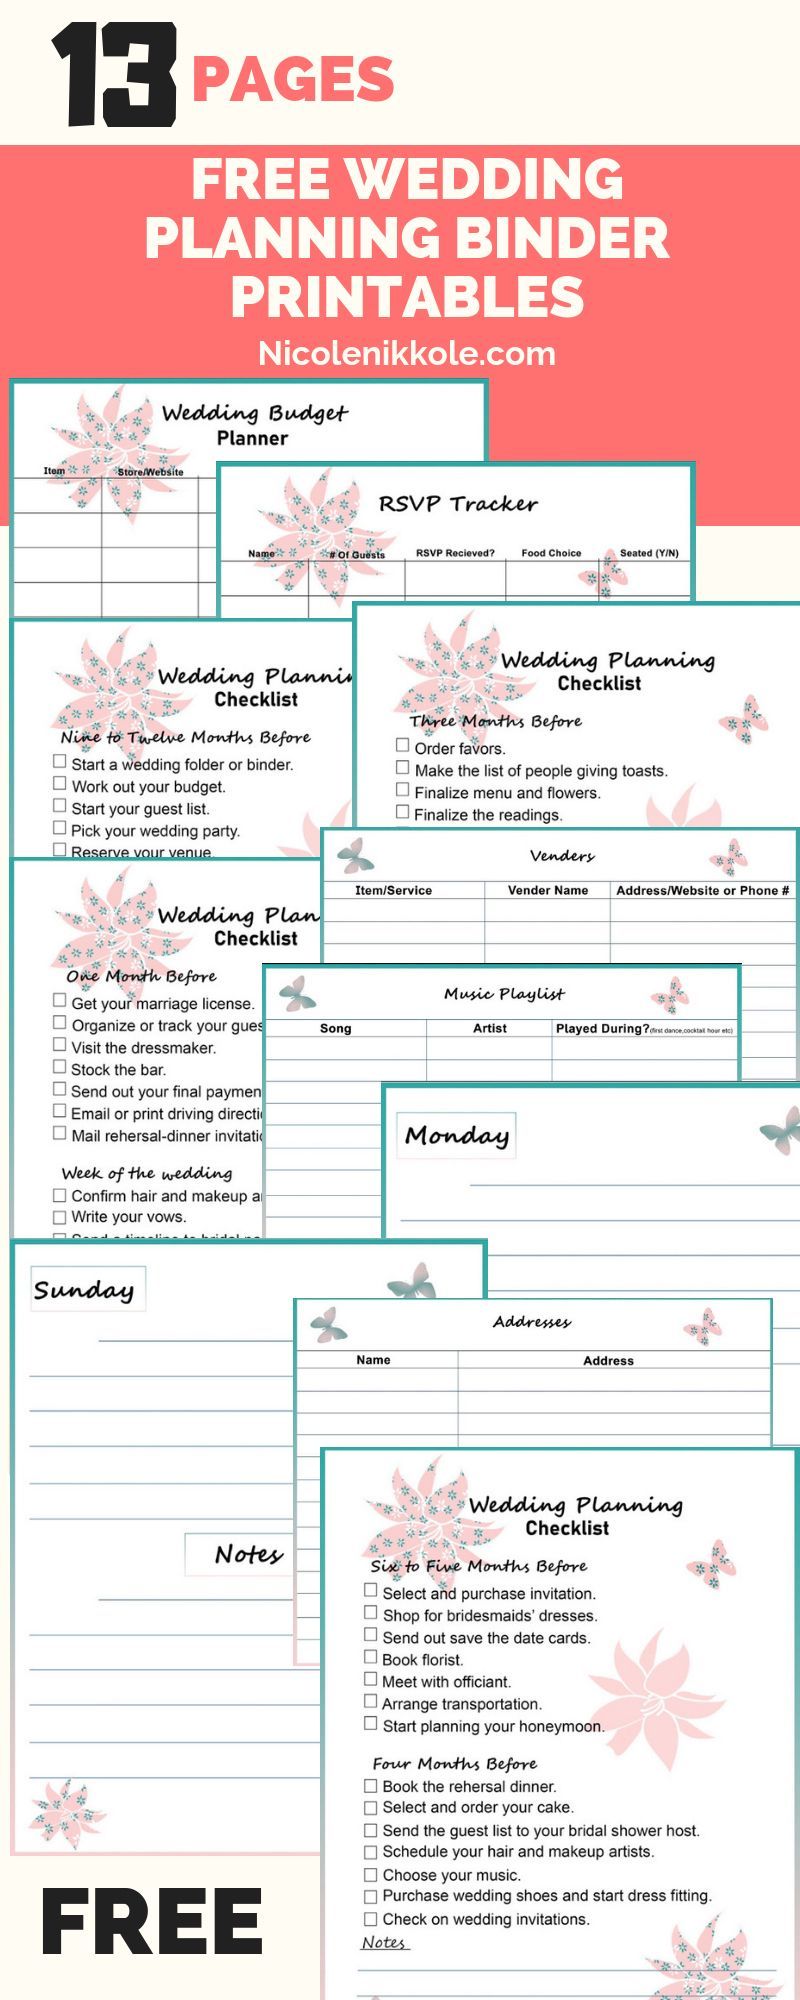 Free wedding binder printables - Free wedding binder printables -   14 diy Wedding planner ideas